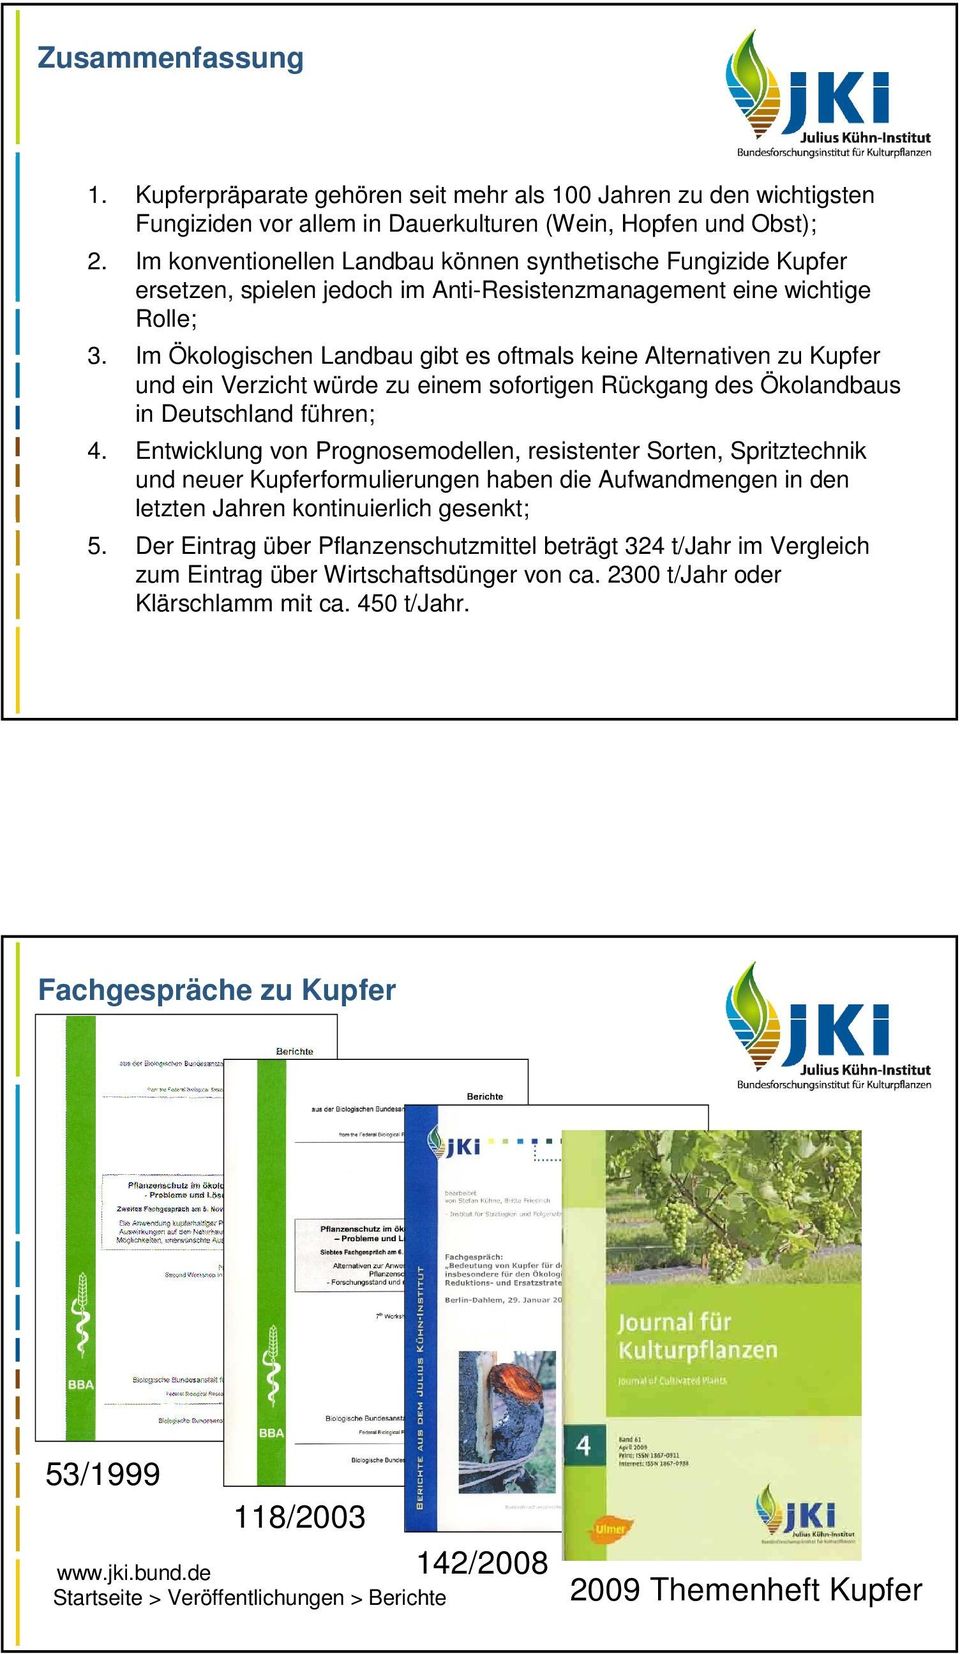 Im Ökologischen Landbau gibt es oftmals keine Alternativen zu Kupfer und ein Verzicht würde zu einem sofortigen Rückgang des Ökolandbaus in Deutschland führen; 4.